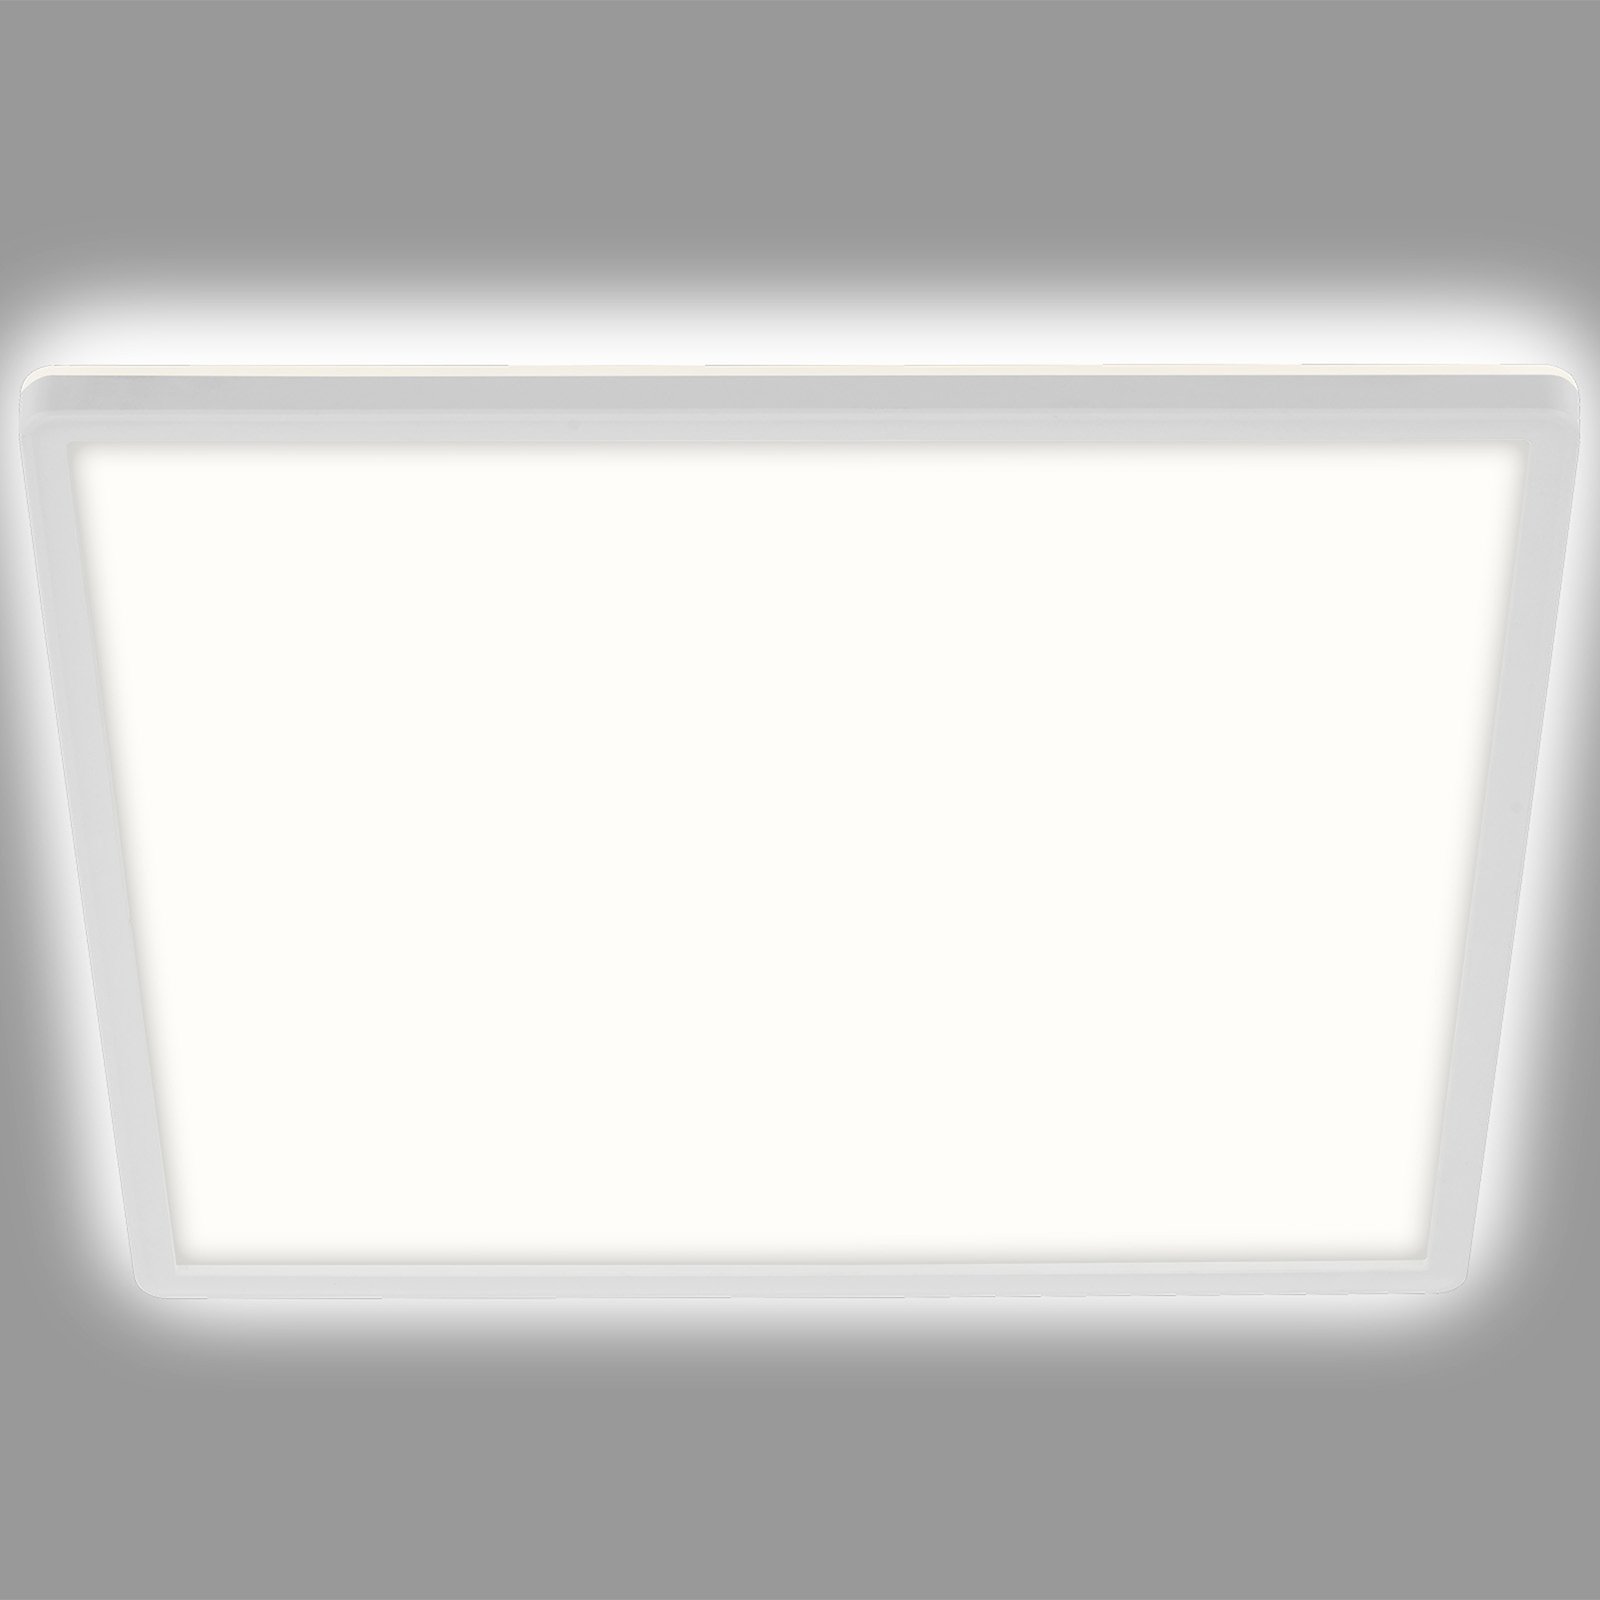 LED ceiling light Slim, angular 29.3 x 29.3 cm